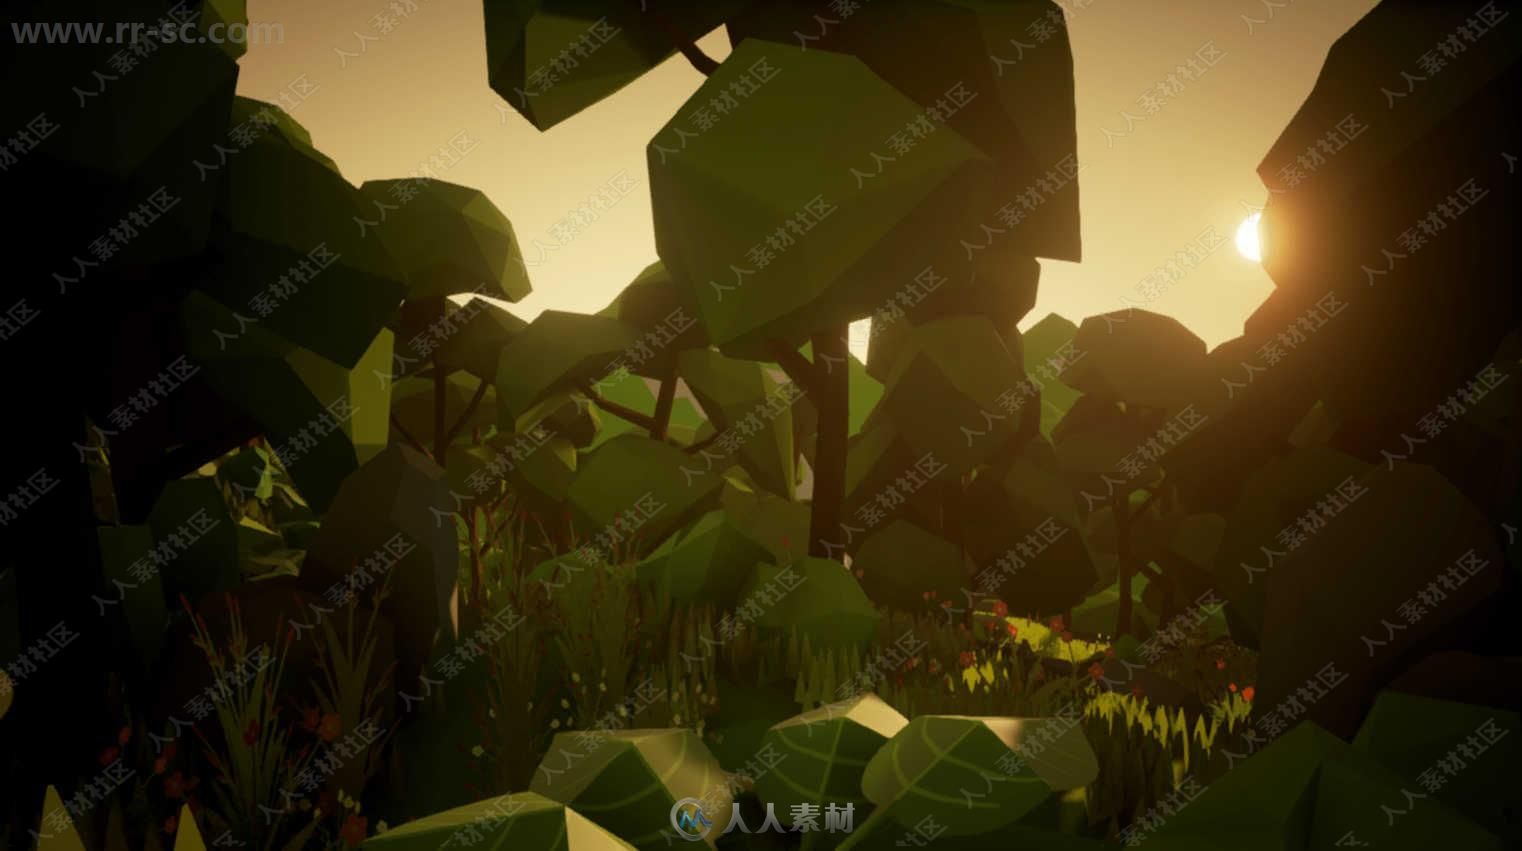 Unreal Engine虚幻游戏引擎扩展资料2018年4月合辑第一季